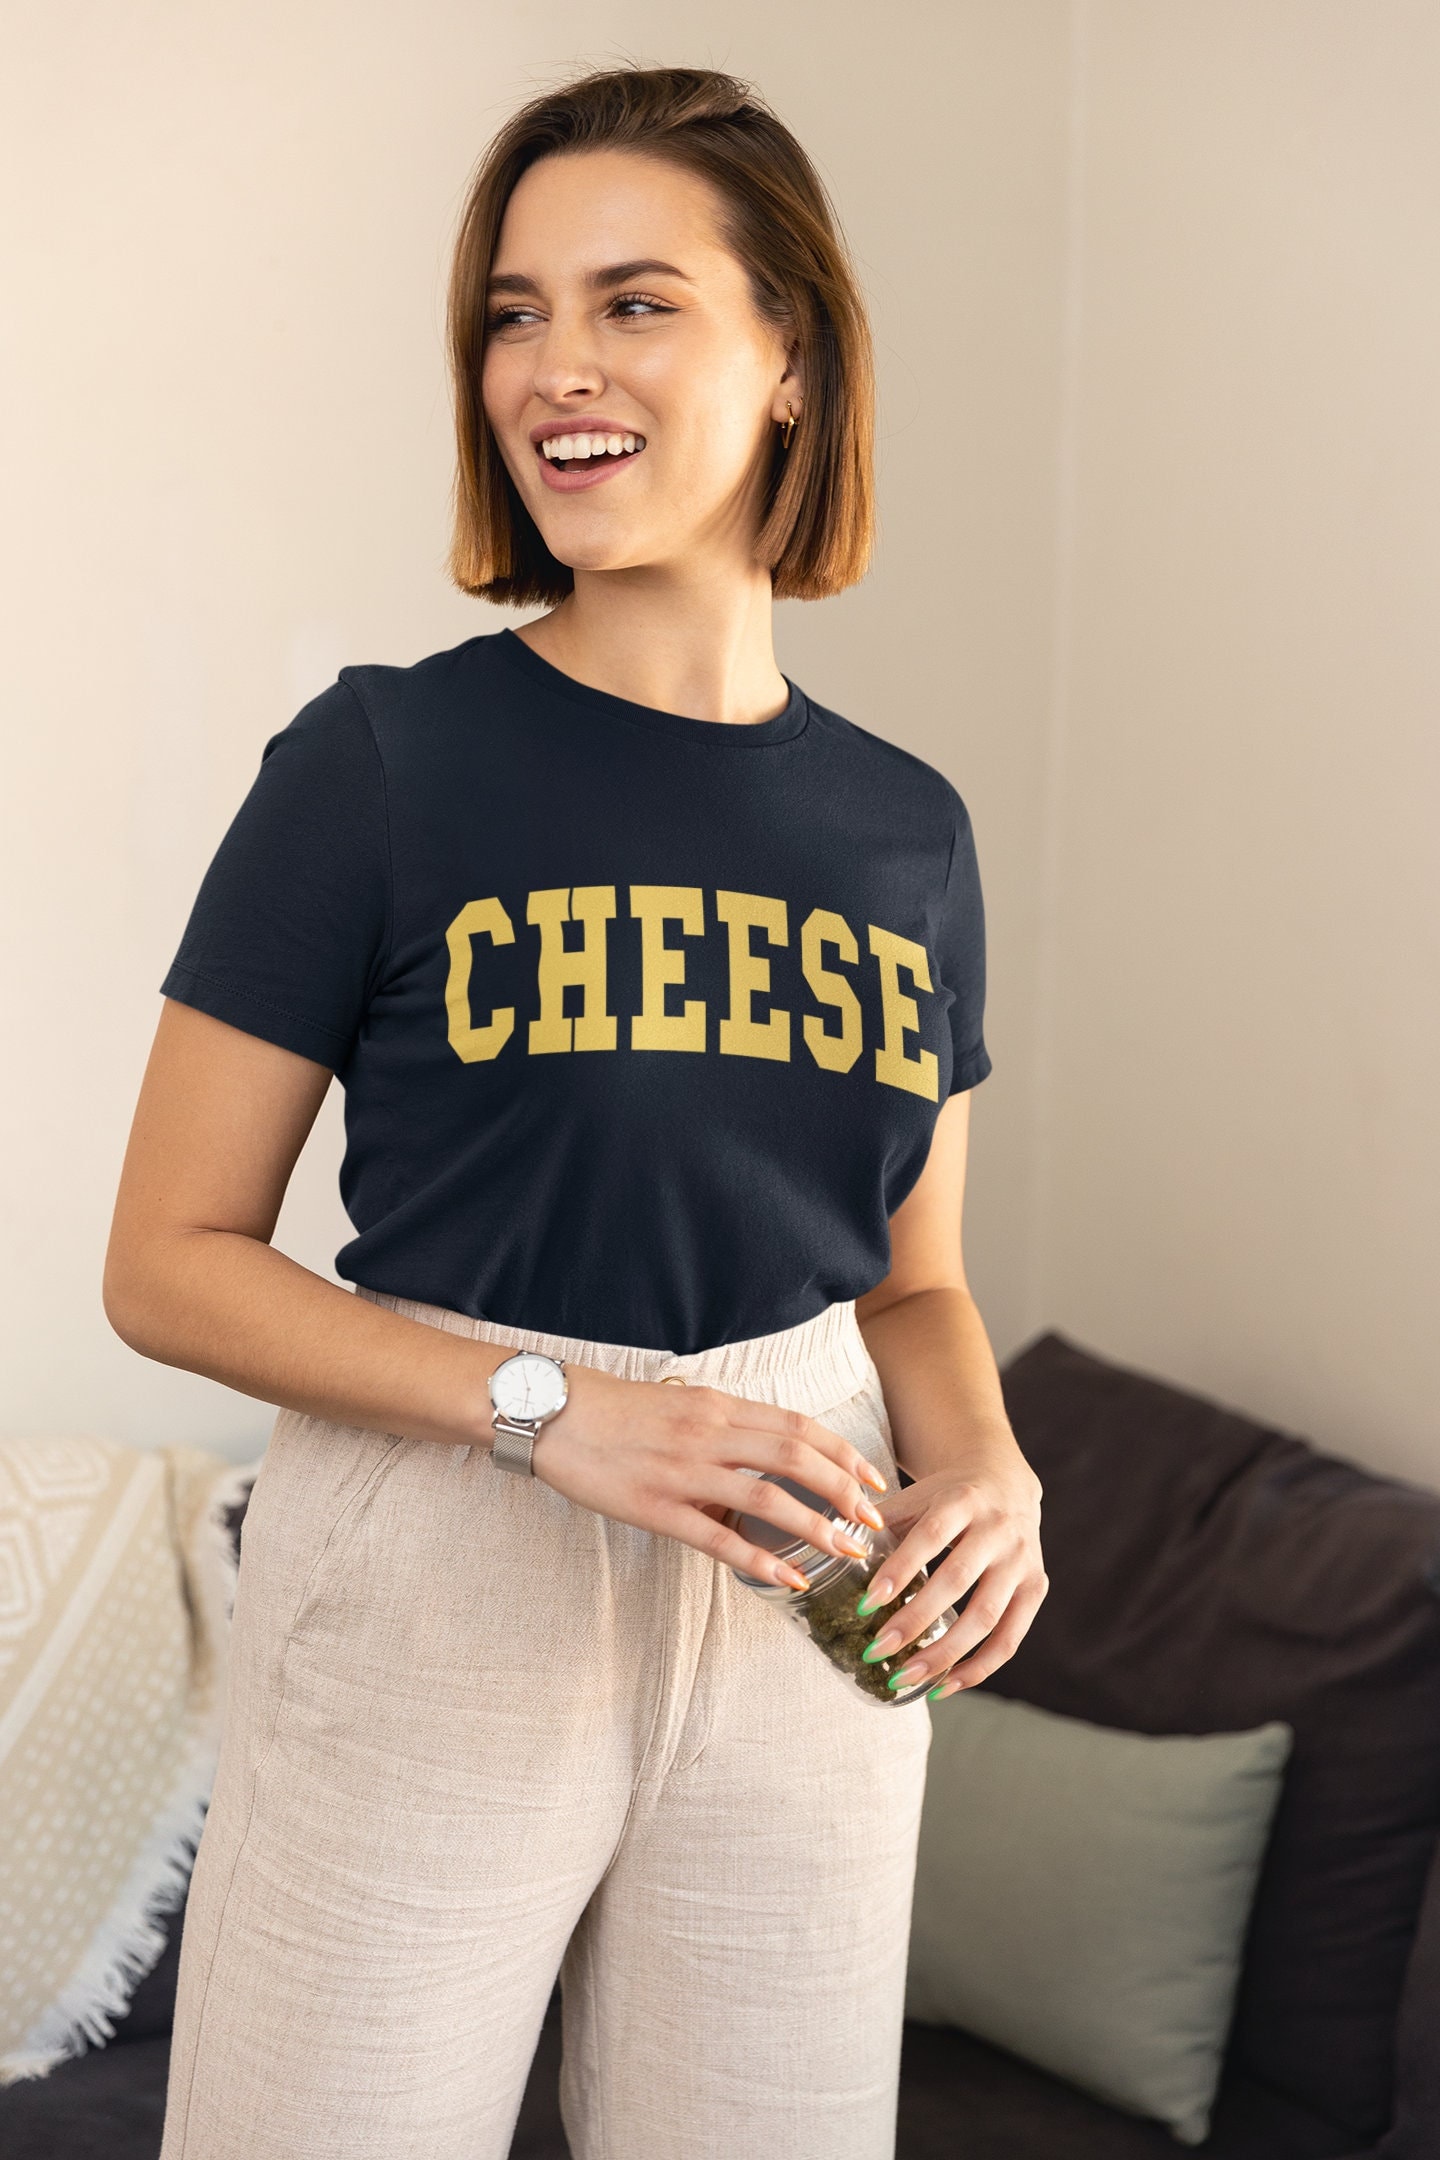 Käse - Unisex T-Shirt von TheRefinedSpirit